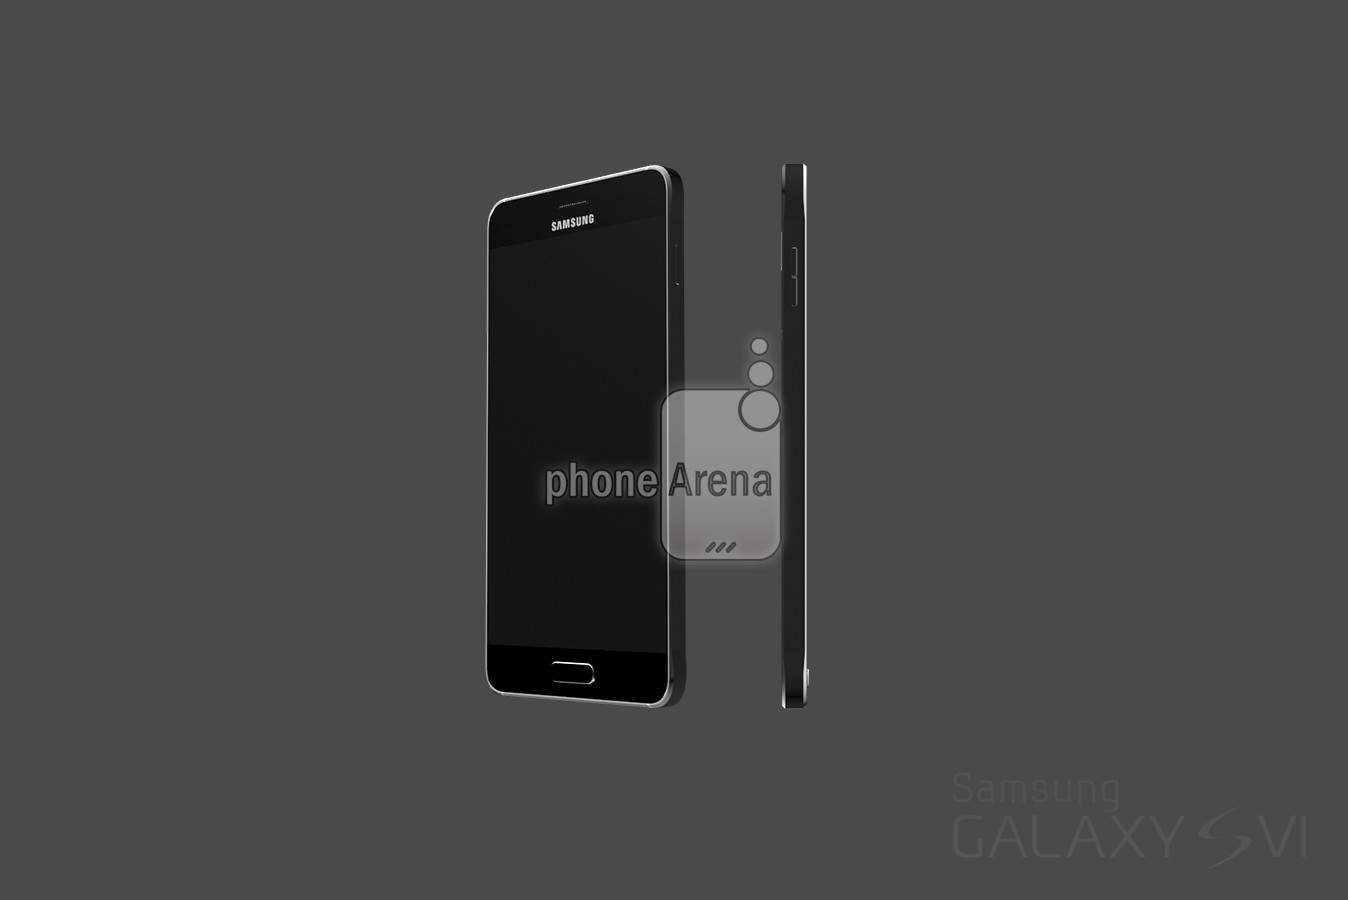 Alleged-Galaxy-S6-renders.jpg